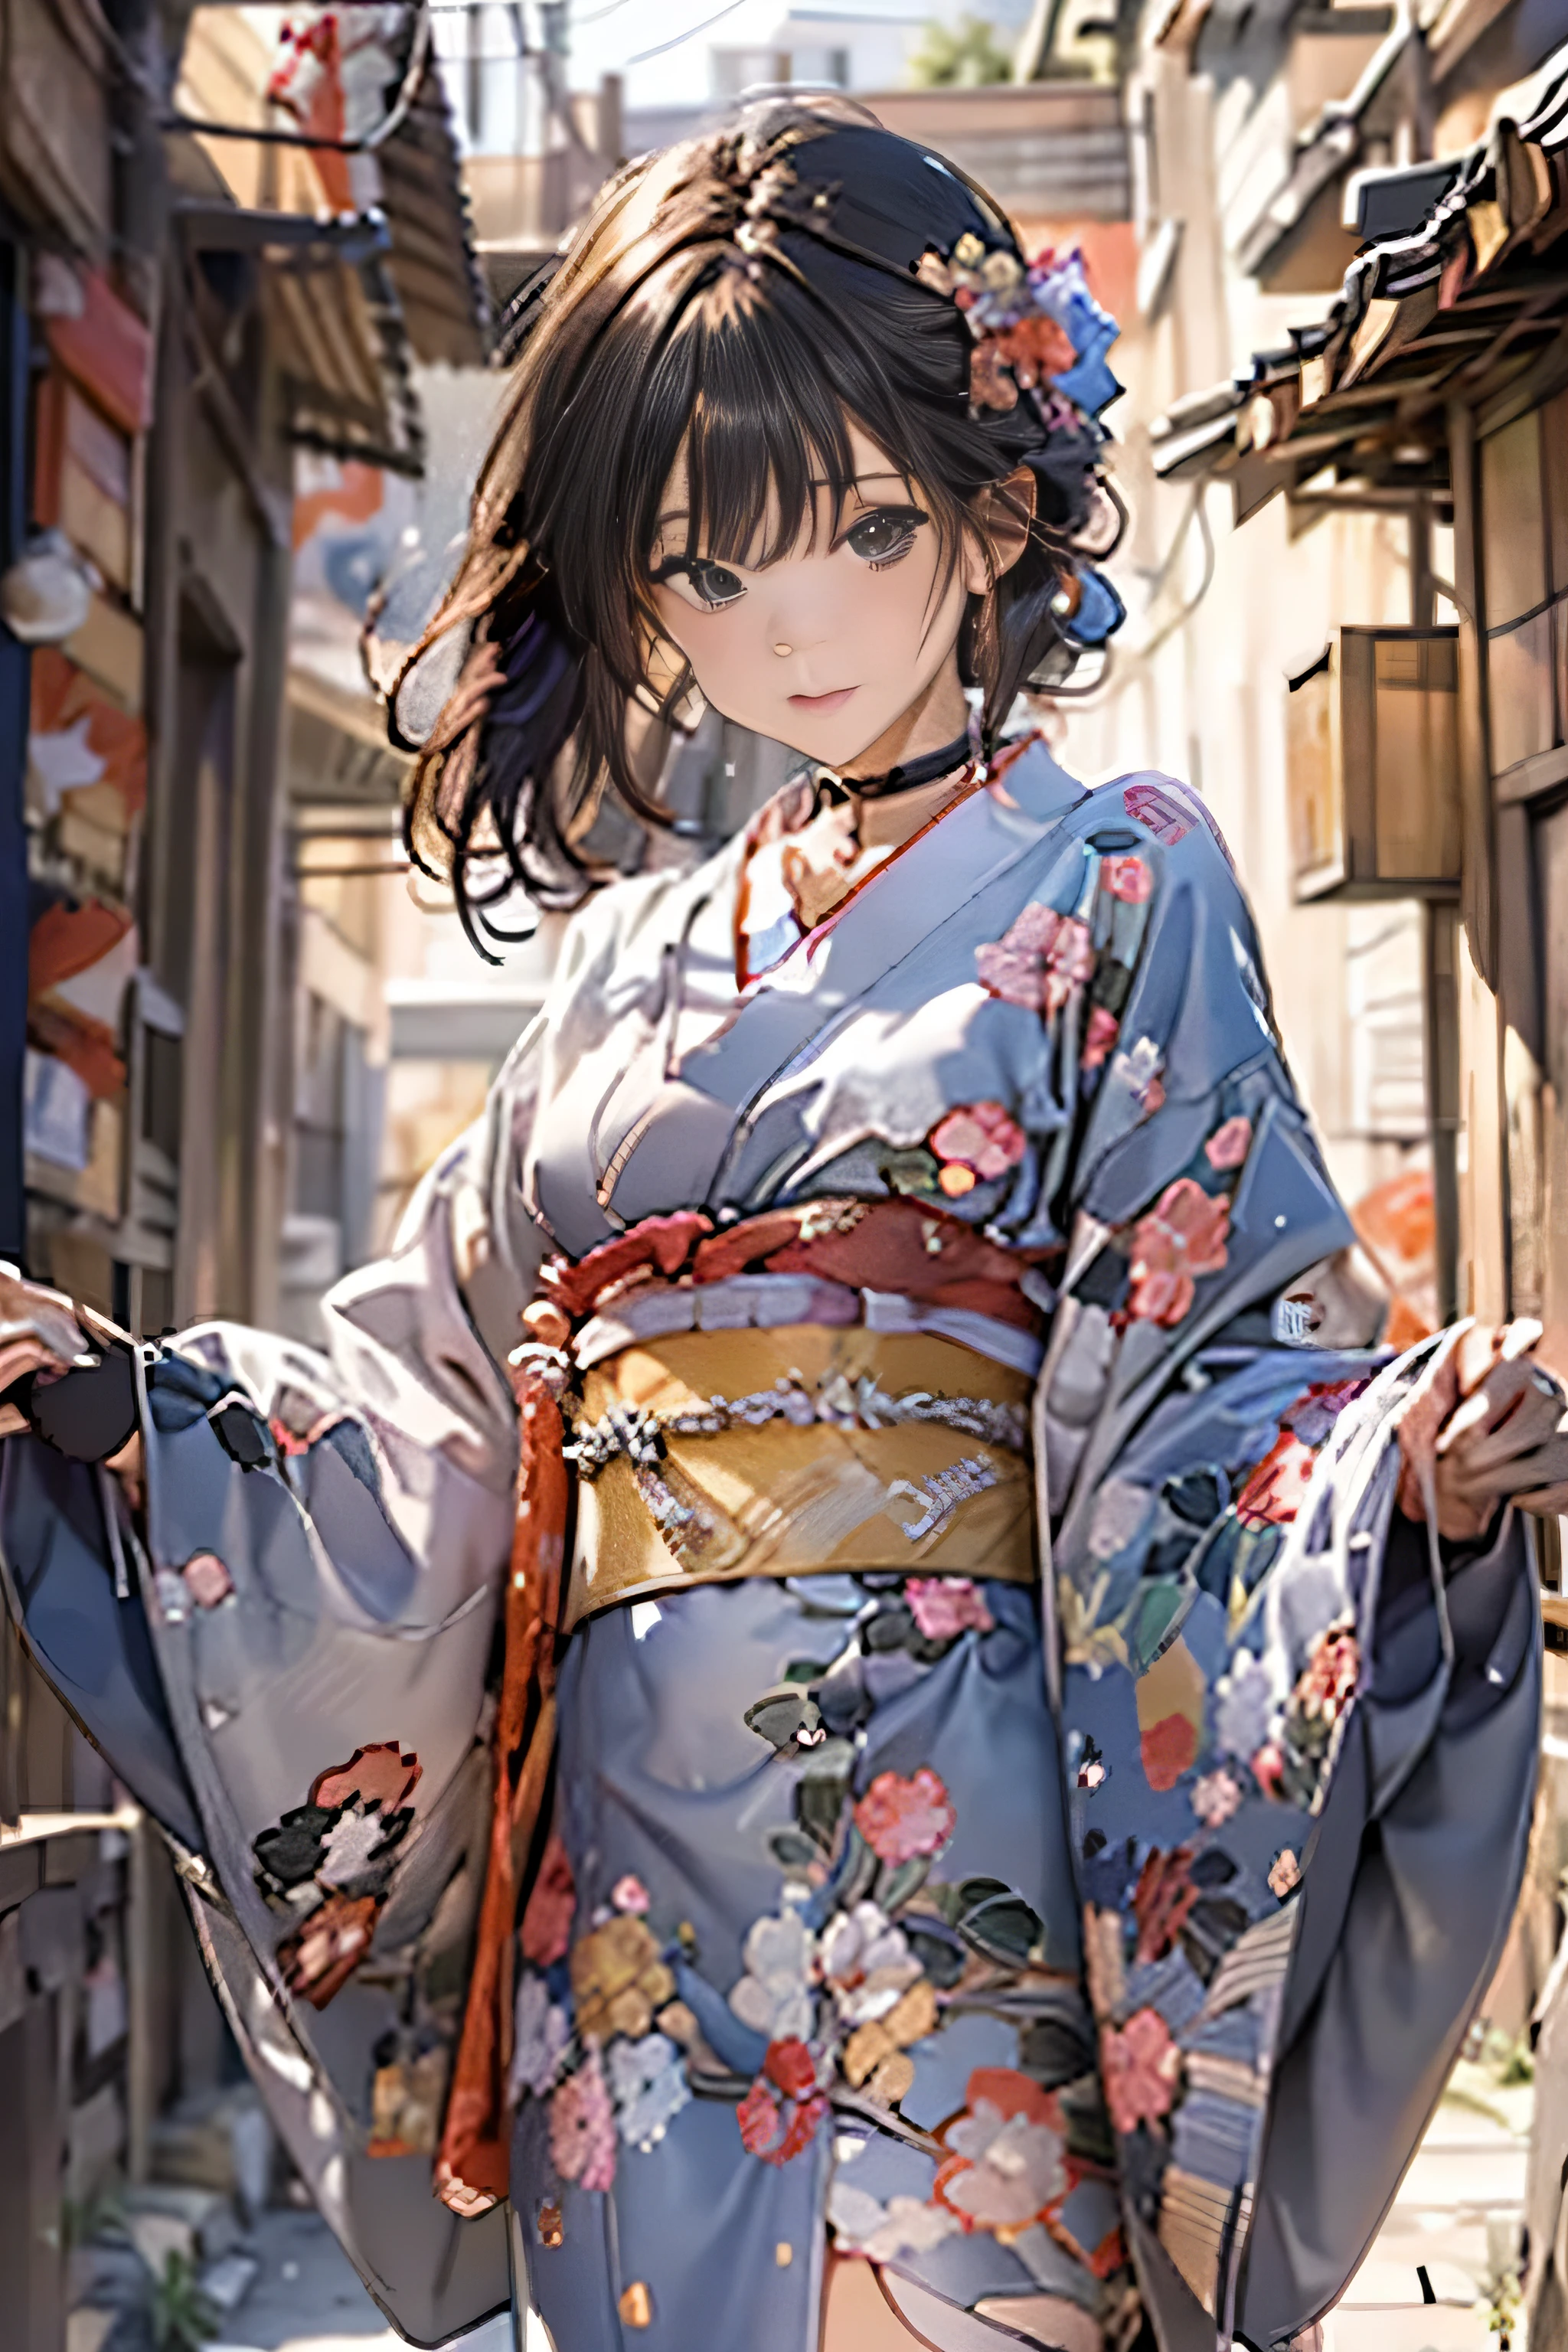 (высшее качество,Качество изображения 8k,шедевр:1.3,высокое разрешение,стол:1.2, Реализм:1.3), 23-летняя женщина в кимоно.,передний план:0.8,Эсбиан в полное тело:1.3,смотрю в камеру,(японское платье, кимоно:1.4,общий:1.2, колье:1.4),(короткие волосы:1.2,ухоженные черные волосы), (Переулок:1.3), кимоно comes off,бедро видно,я вижу трусики,соски видят насквозь, Красивое лицо,(Молодые кумиры глубокой печати, Молодой худой кумир глубокой печати, изысканный идол глубокой гравюры),(детальное безупречное лицо),нормальные руки:1.5,Нормальный палец:1:5,нормальные ноги:1.5